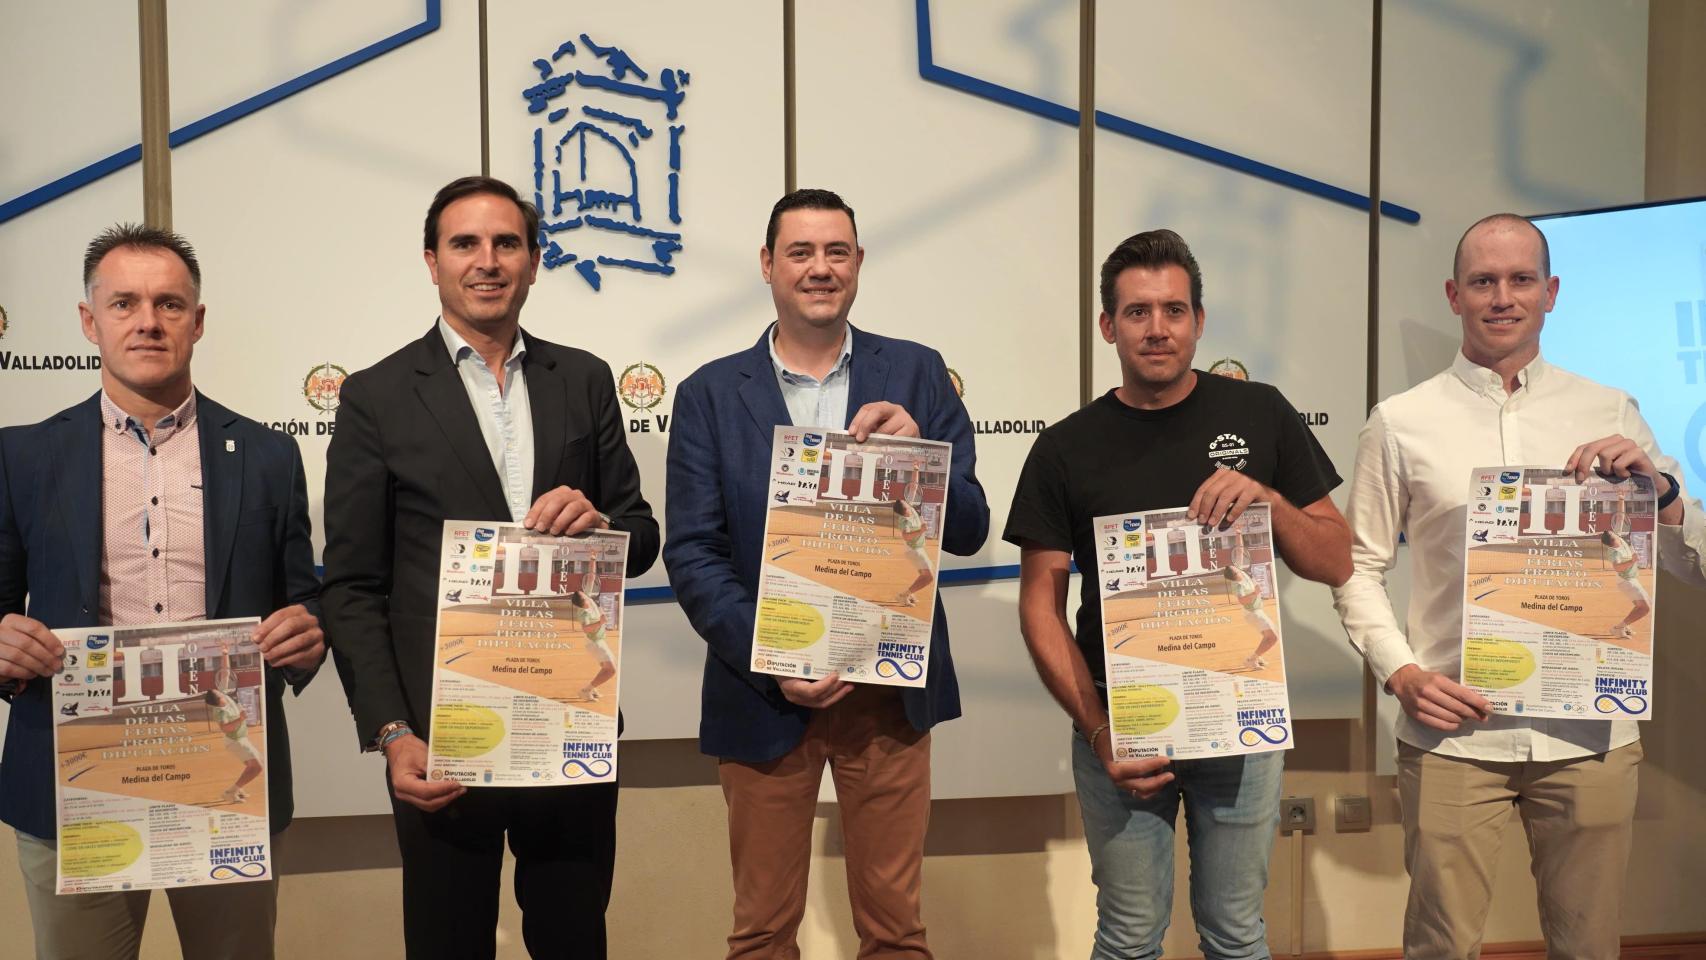 Presentación del evento en la Diputación de Valladolid